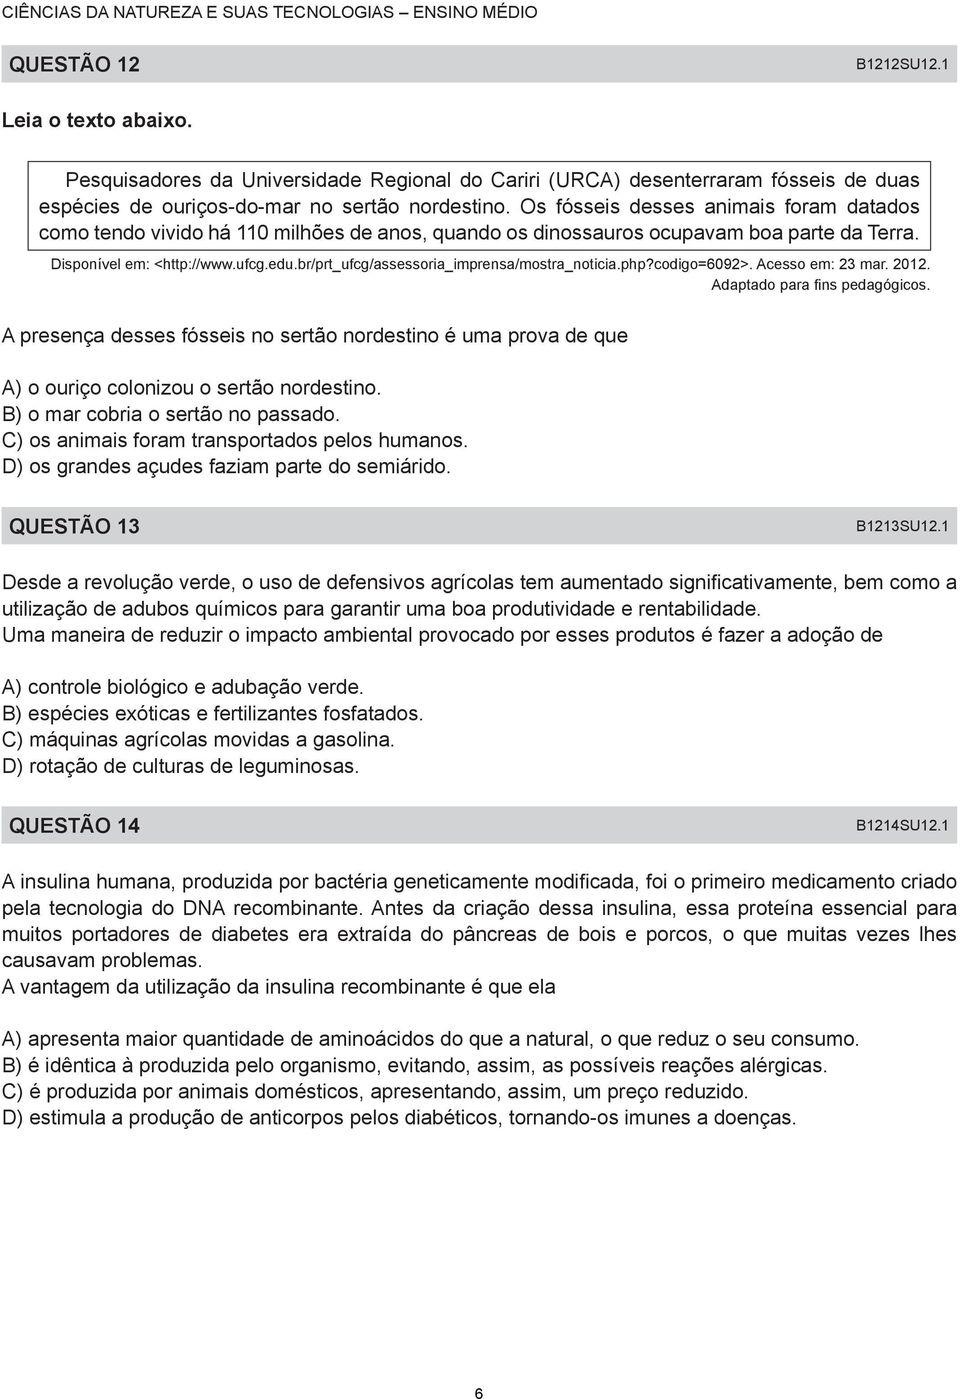 br/prt_ufcg/assessoria_imprensa/mostra_noticia.php?codigo=6092>. Acesso em: 23 mar. 2012. Adaptado para fins pedagógicos.